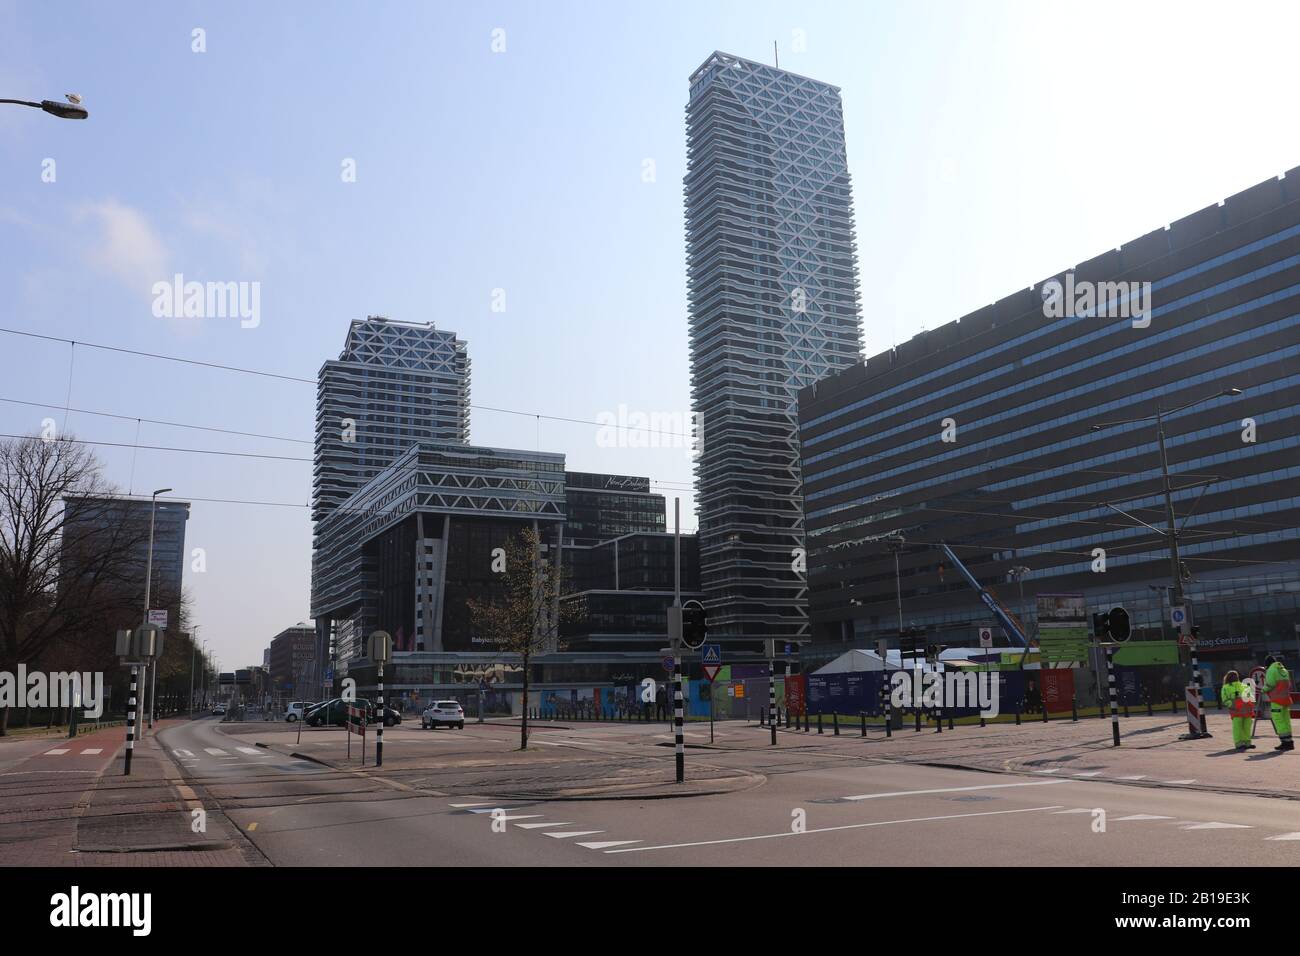 Ich habe diese Fotos in den Straßen von den Haag, Niederlande gemacht. Sie zeigen zwei verschiedene Baustile: Modernen und typisch niederländischen Stil Stockfoto